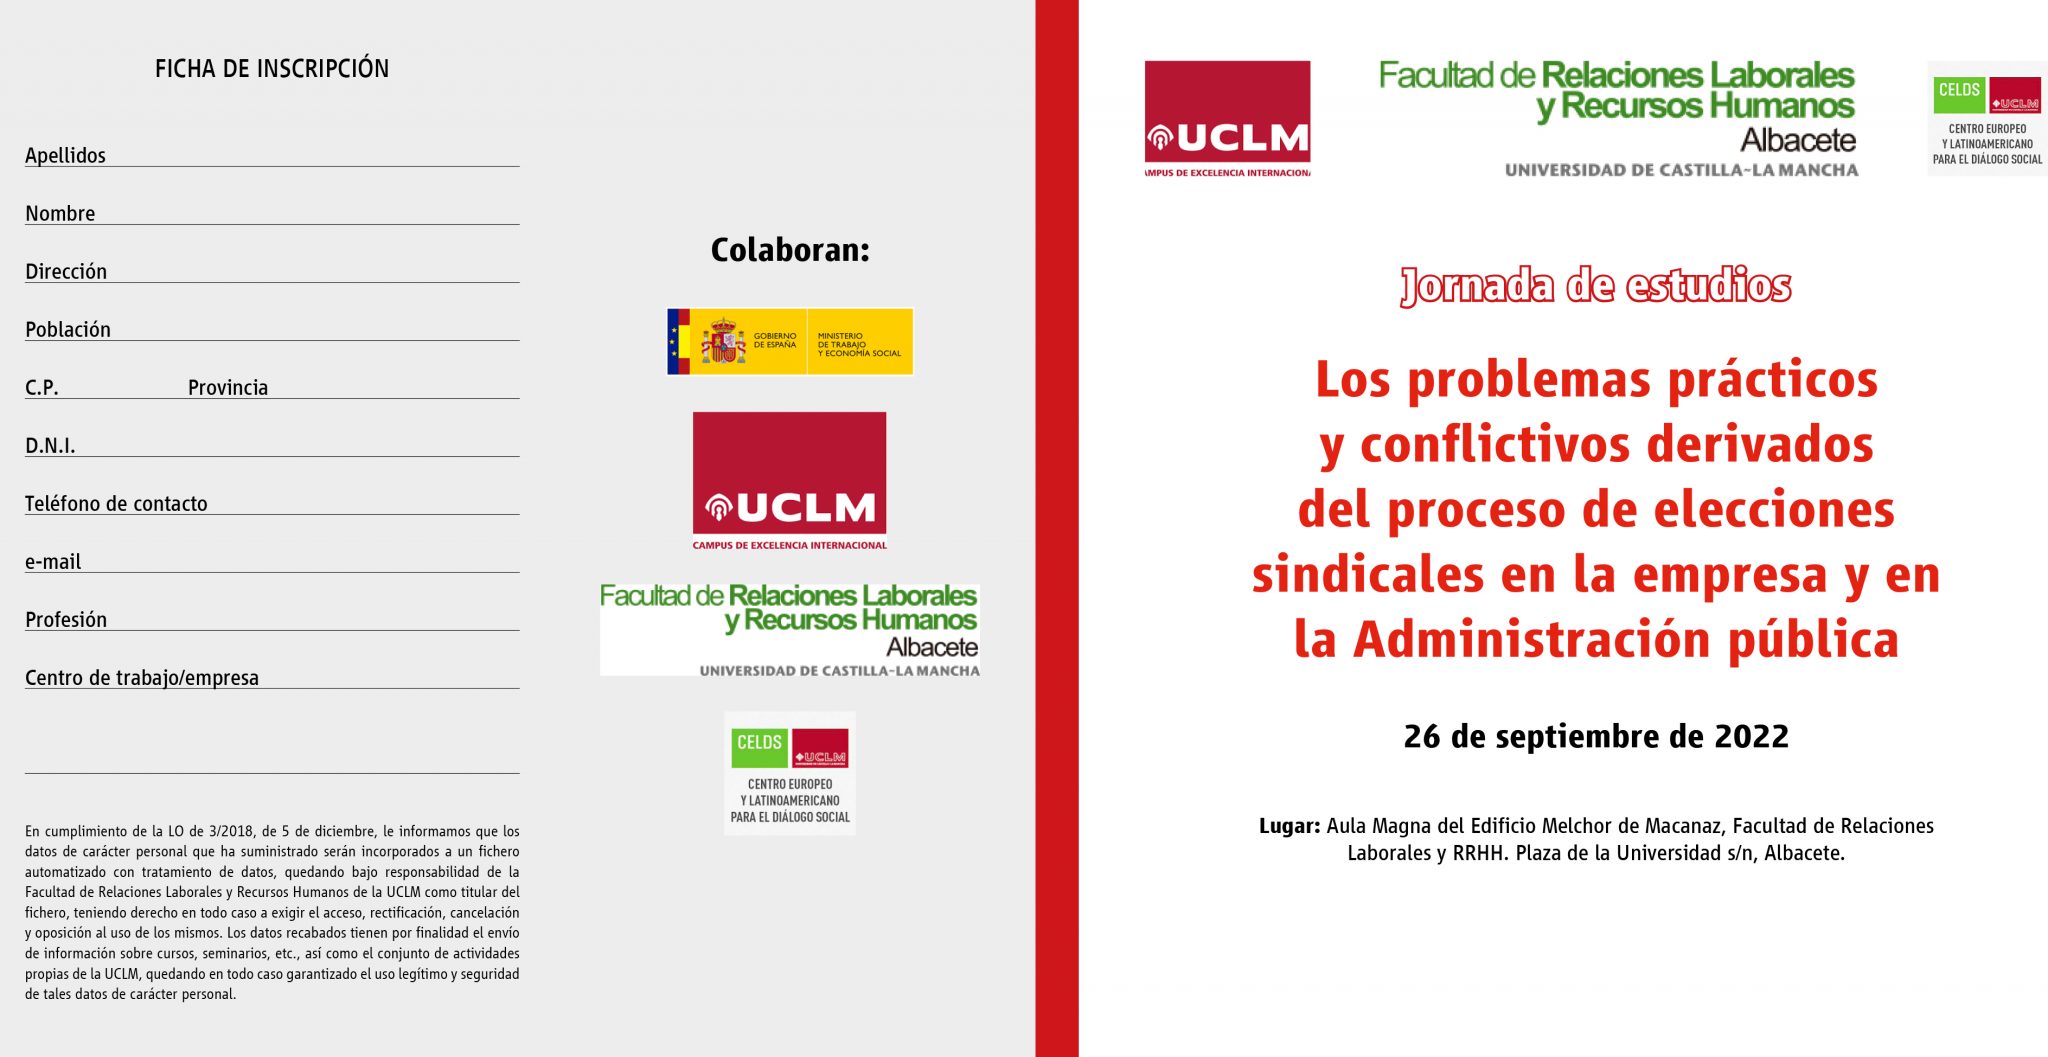 La UCLM analizará el proceso de elecciones sindicales en la empresa y en las administraciones públicas